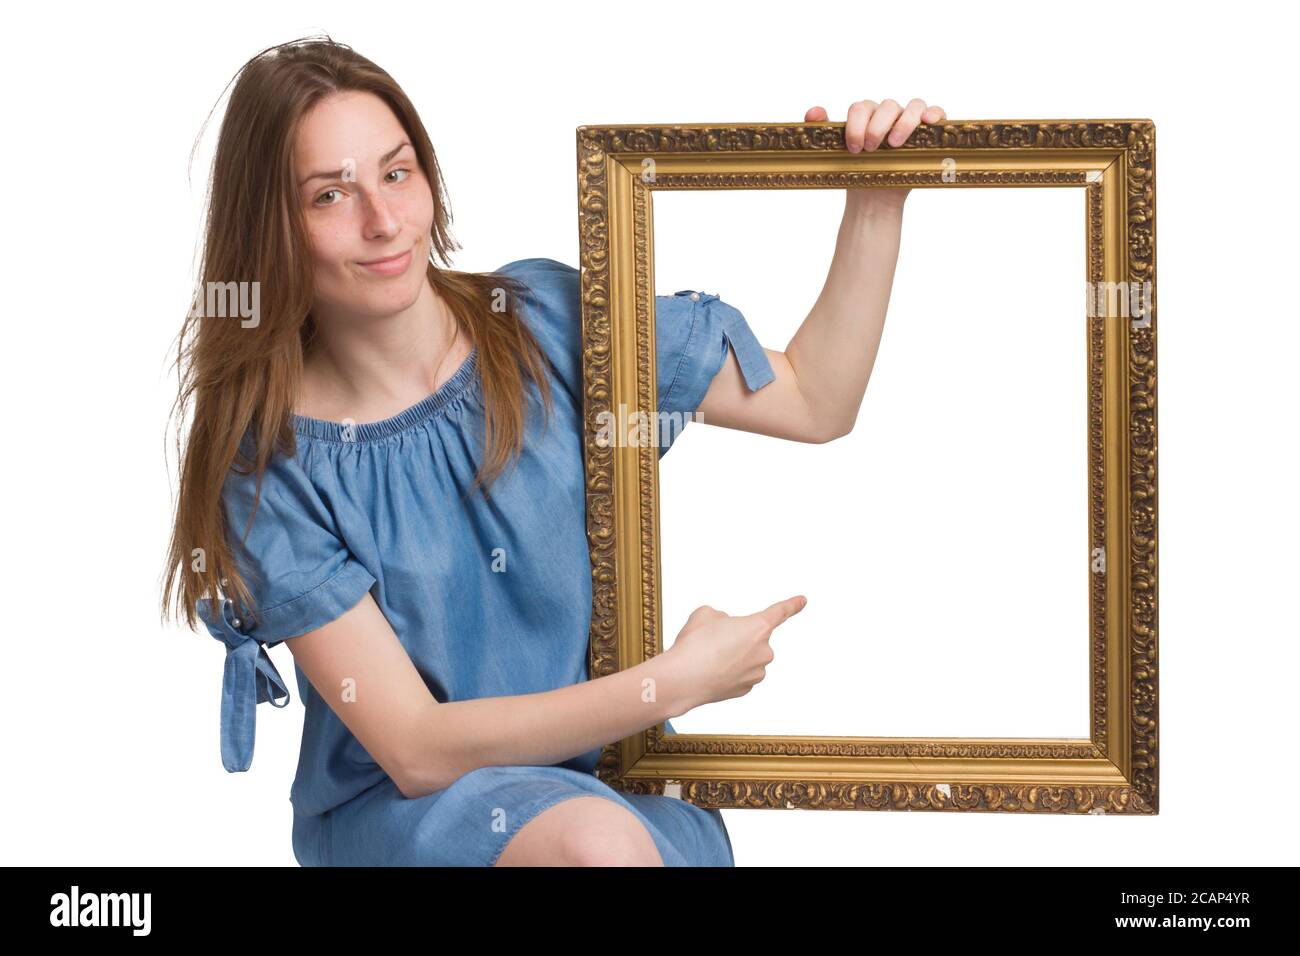 Une jeune fille avec de longs cheveux dans une robe bleue. Isolé sur un fond blanc, tenant un cadre d'image dans ses mains, pointant vers lui avec son doigt. copyspace. Avec un regard malicieux Banque D'Images